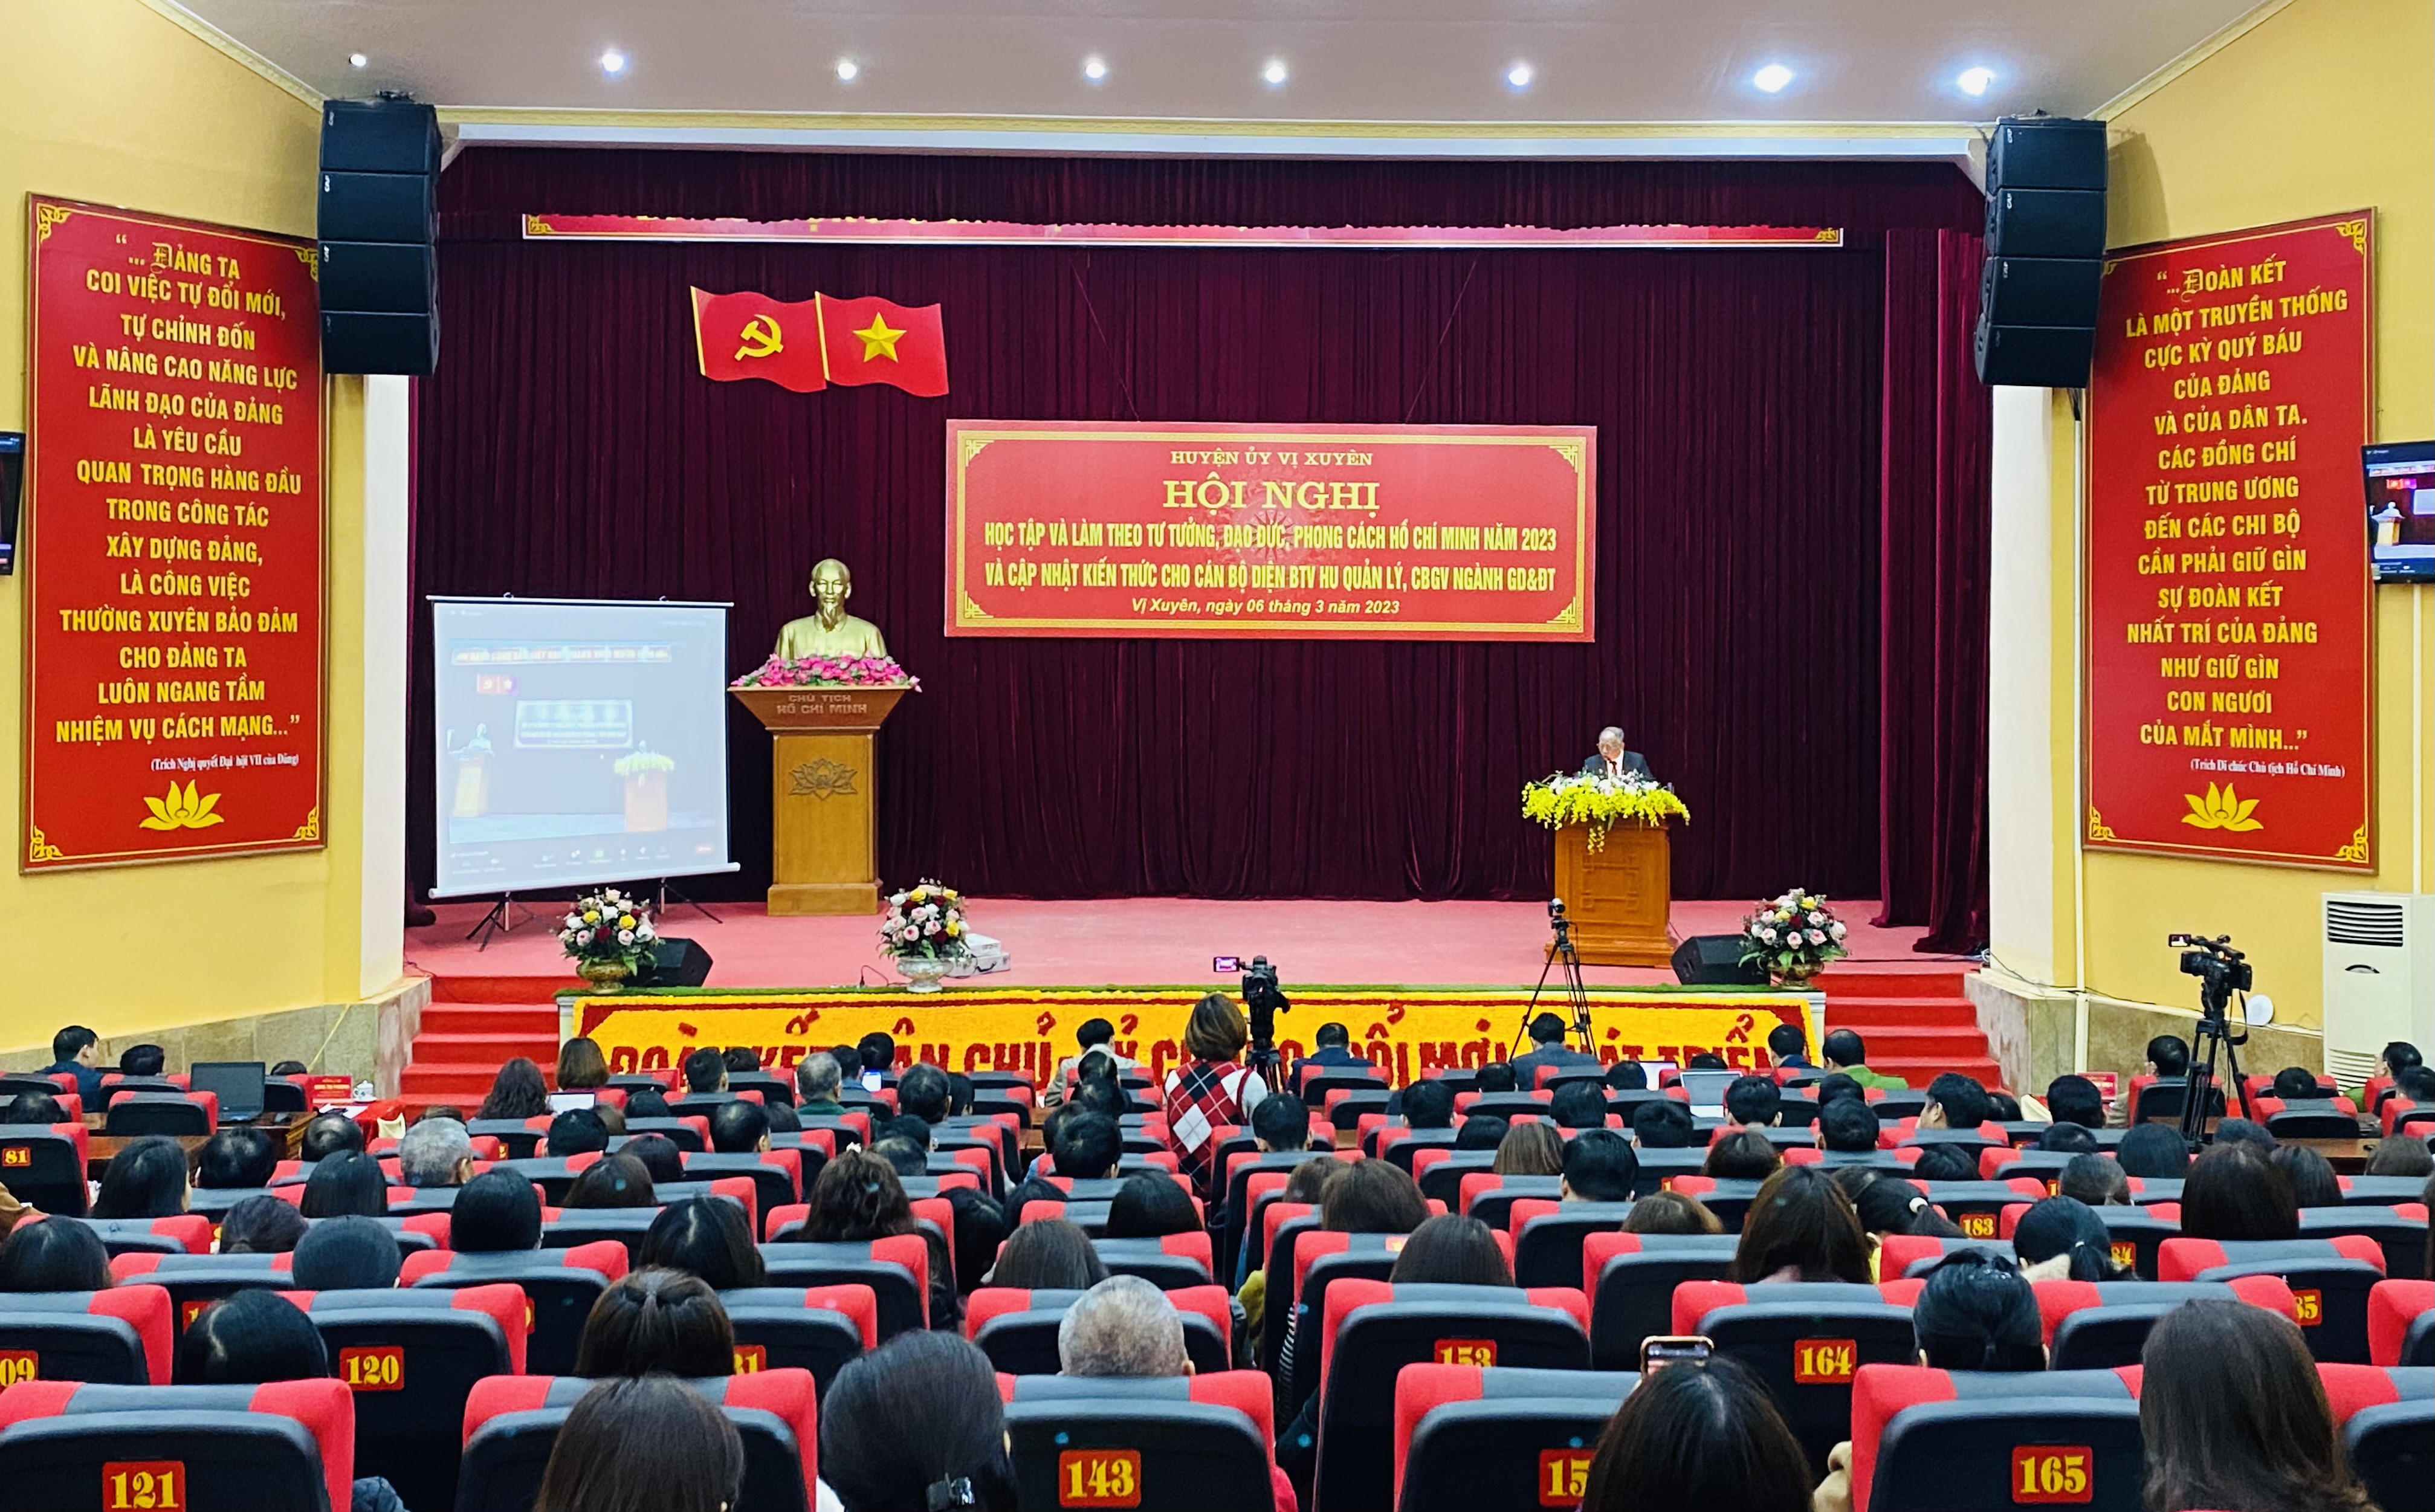 Hội nghị học tập và làm theo tư tưởng, đạo đức, phong cách Hồ Chí Minh